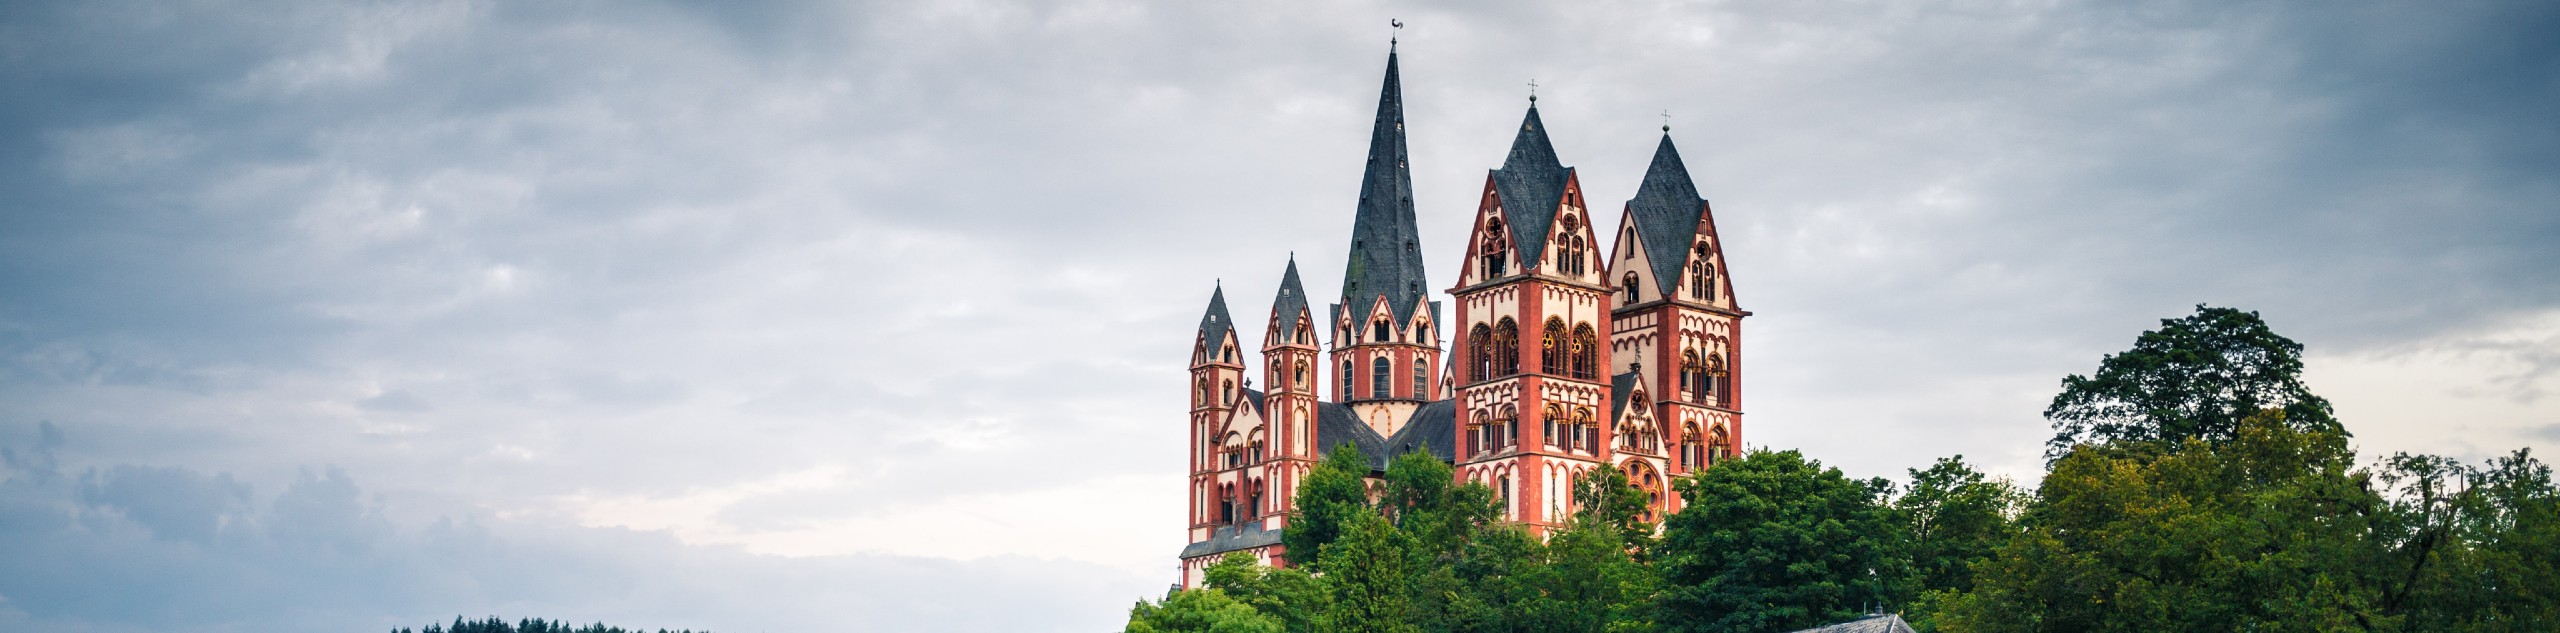 Beautiful castle in Germany